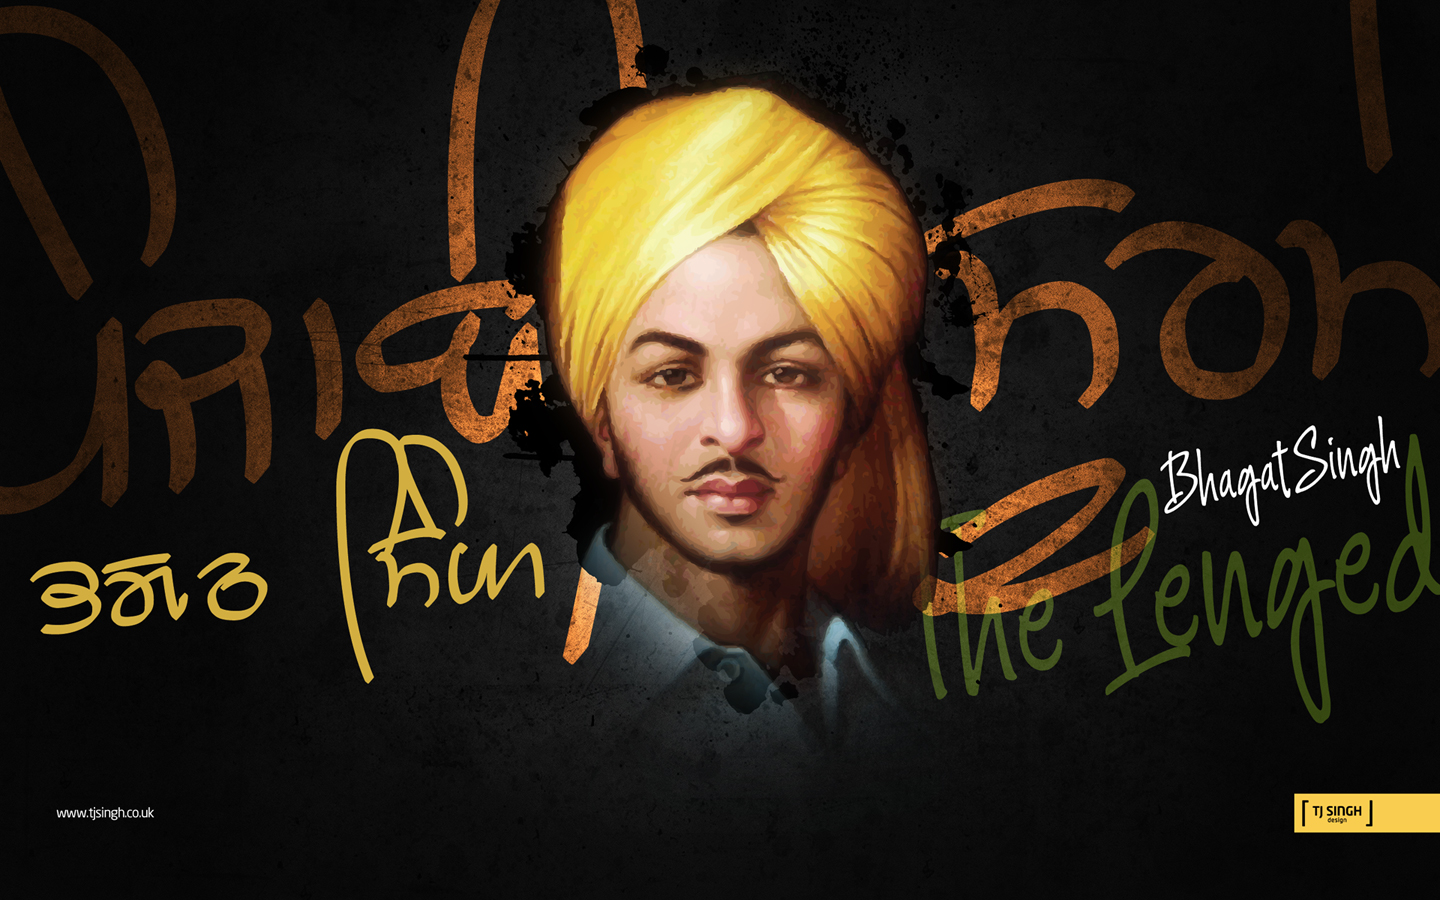 Shaheed 'martyr' Bhagat Singh by tj-singh on DeviantArt